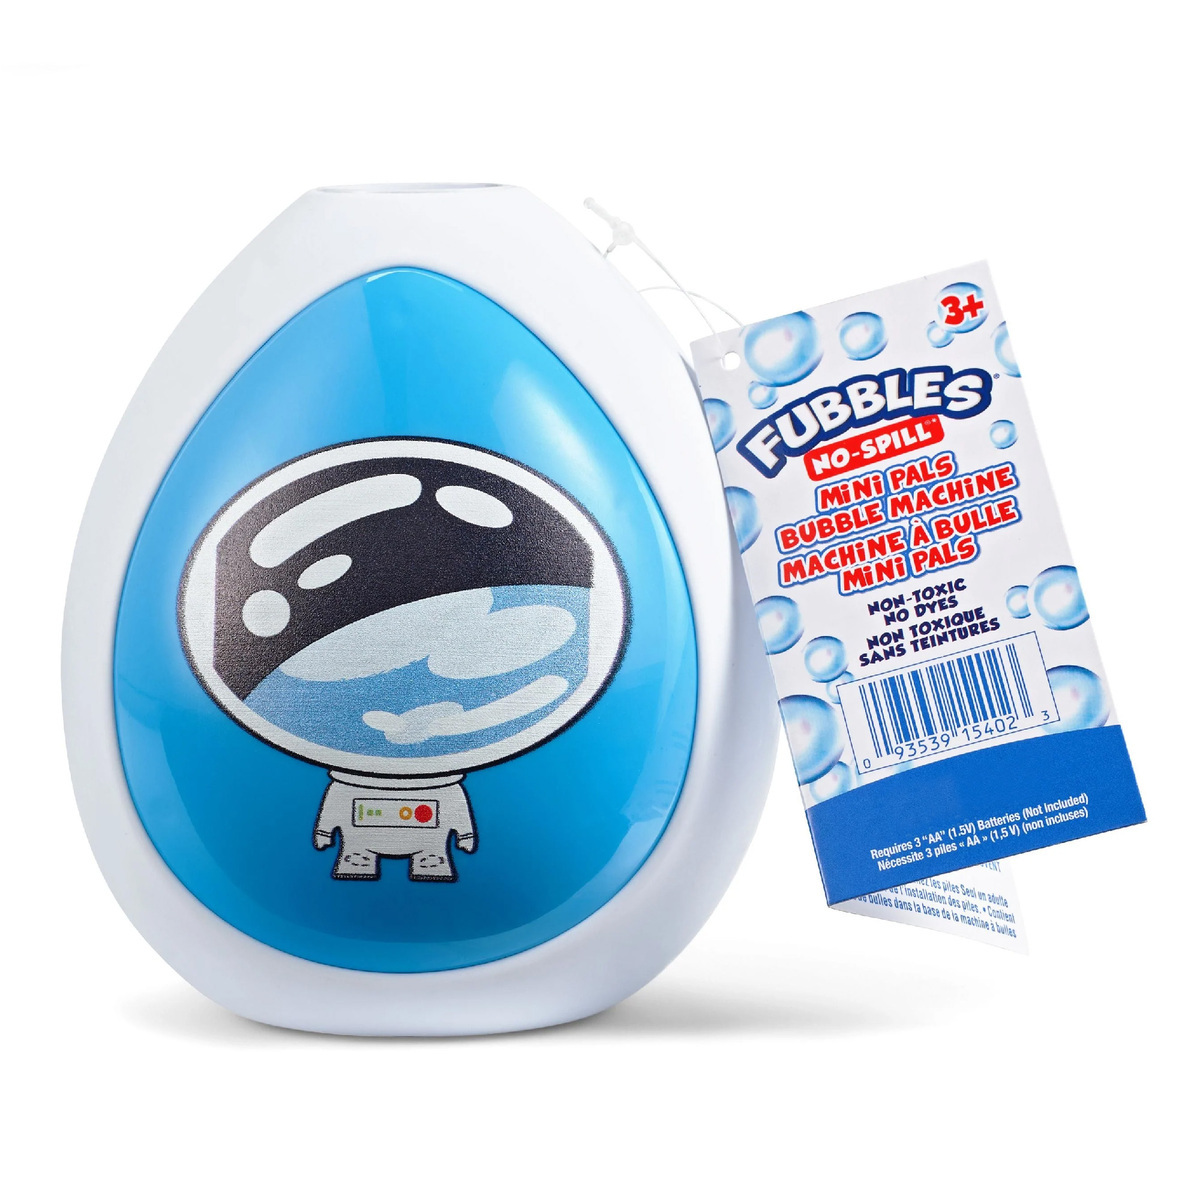 Fubbles Mini Pal Bubble Machine, Blue, 54023